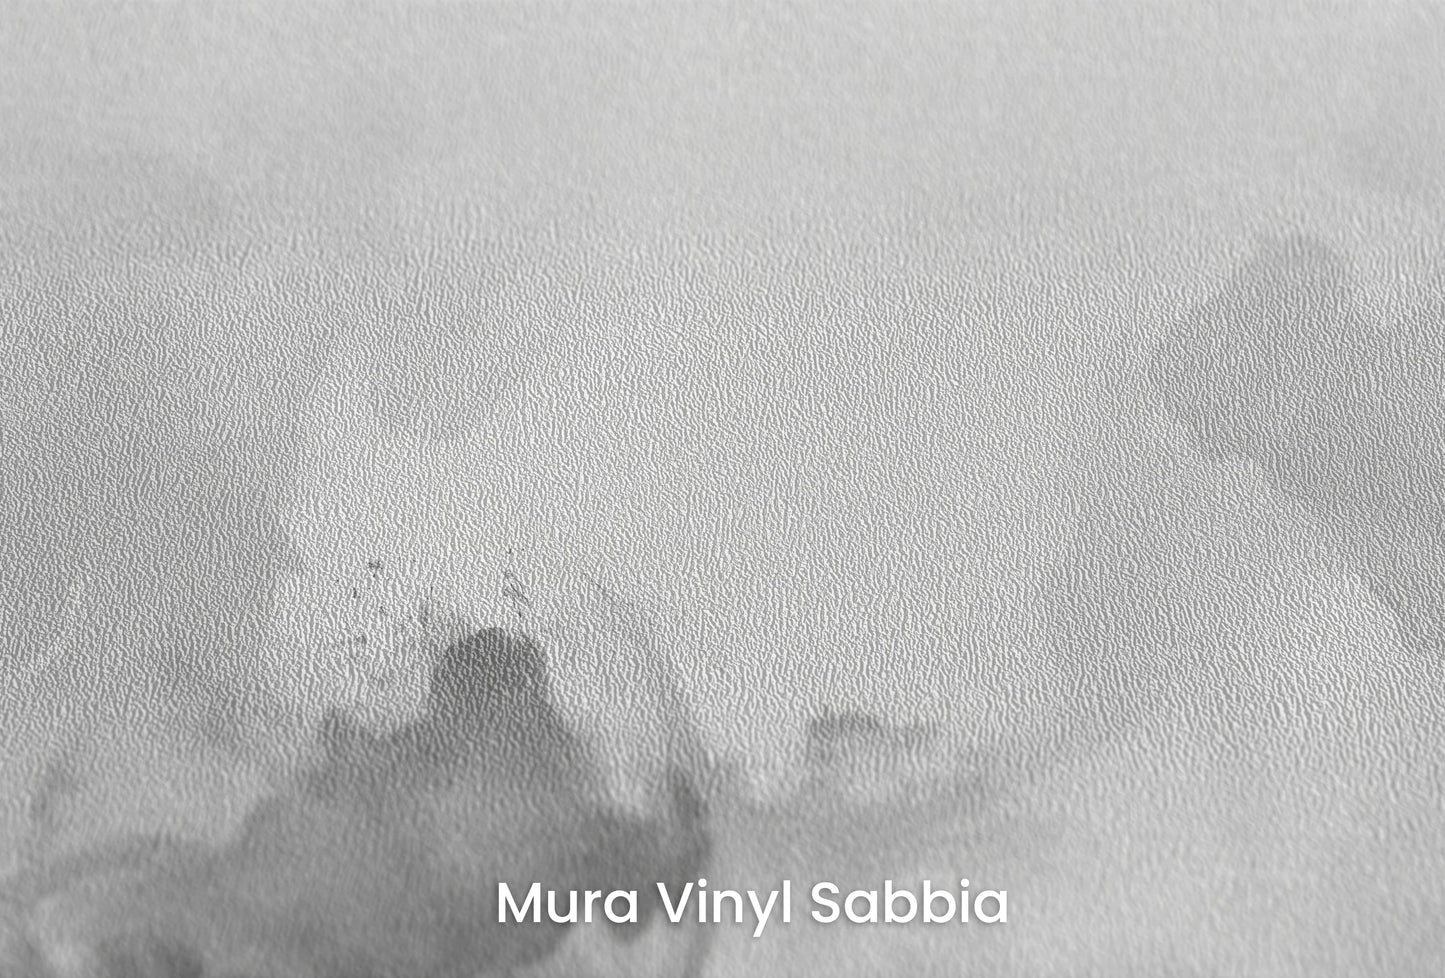 Zbliżenie na artystyczną fototapetę o nazwie Muted Turmoil na podłożu Mura Vinyl Sabbia struktura grubego ziarna piasku.